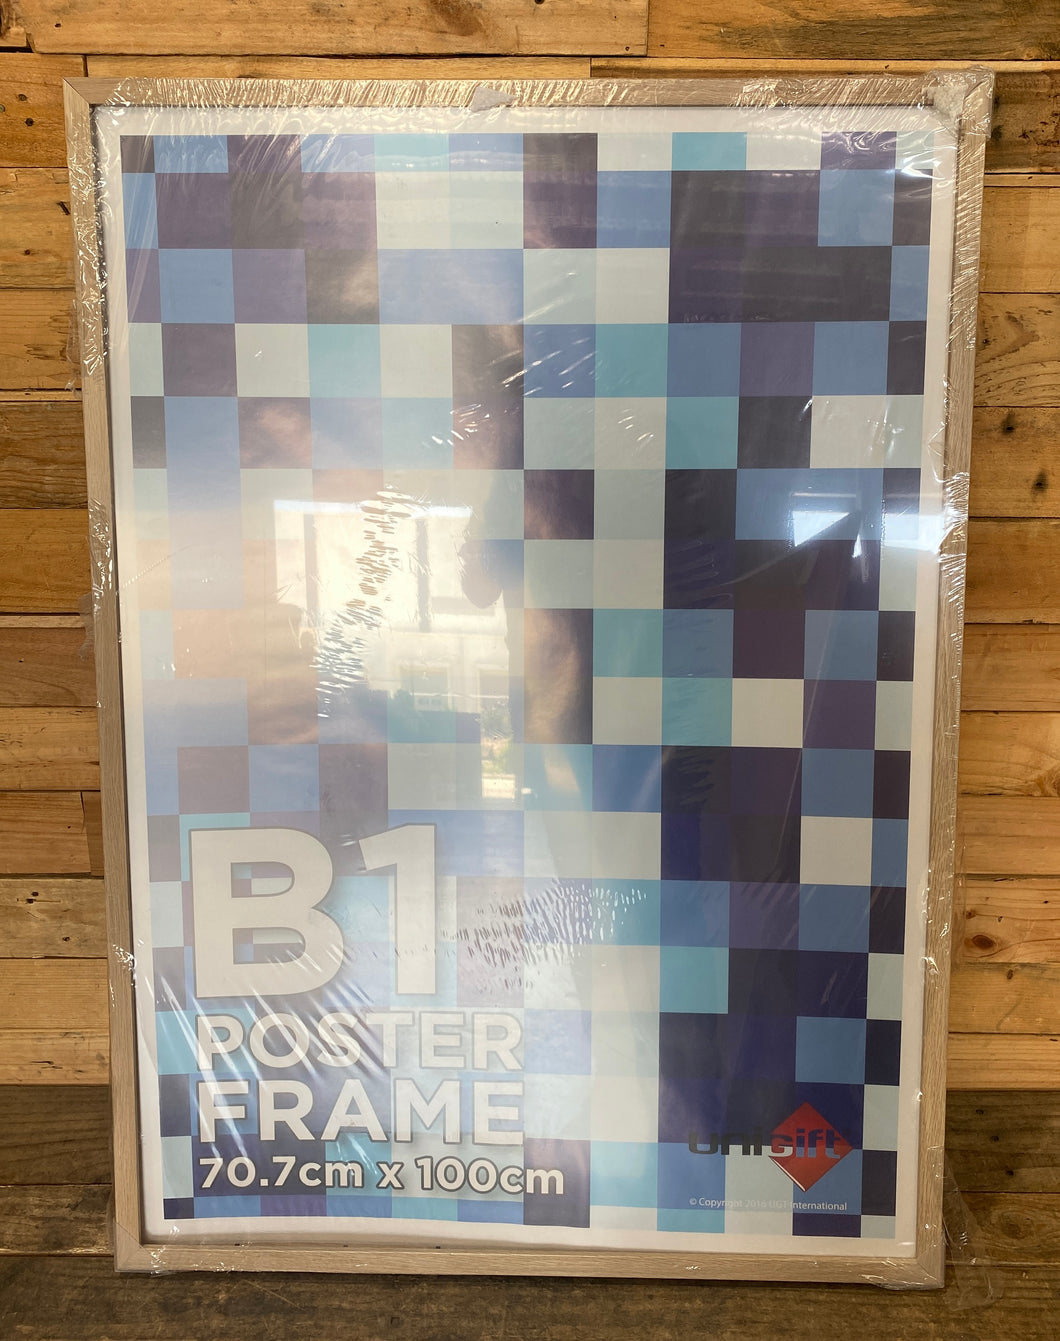 B1 Poster Frame